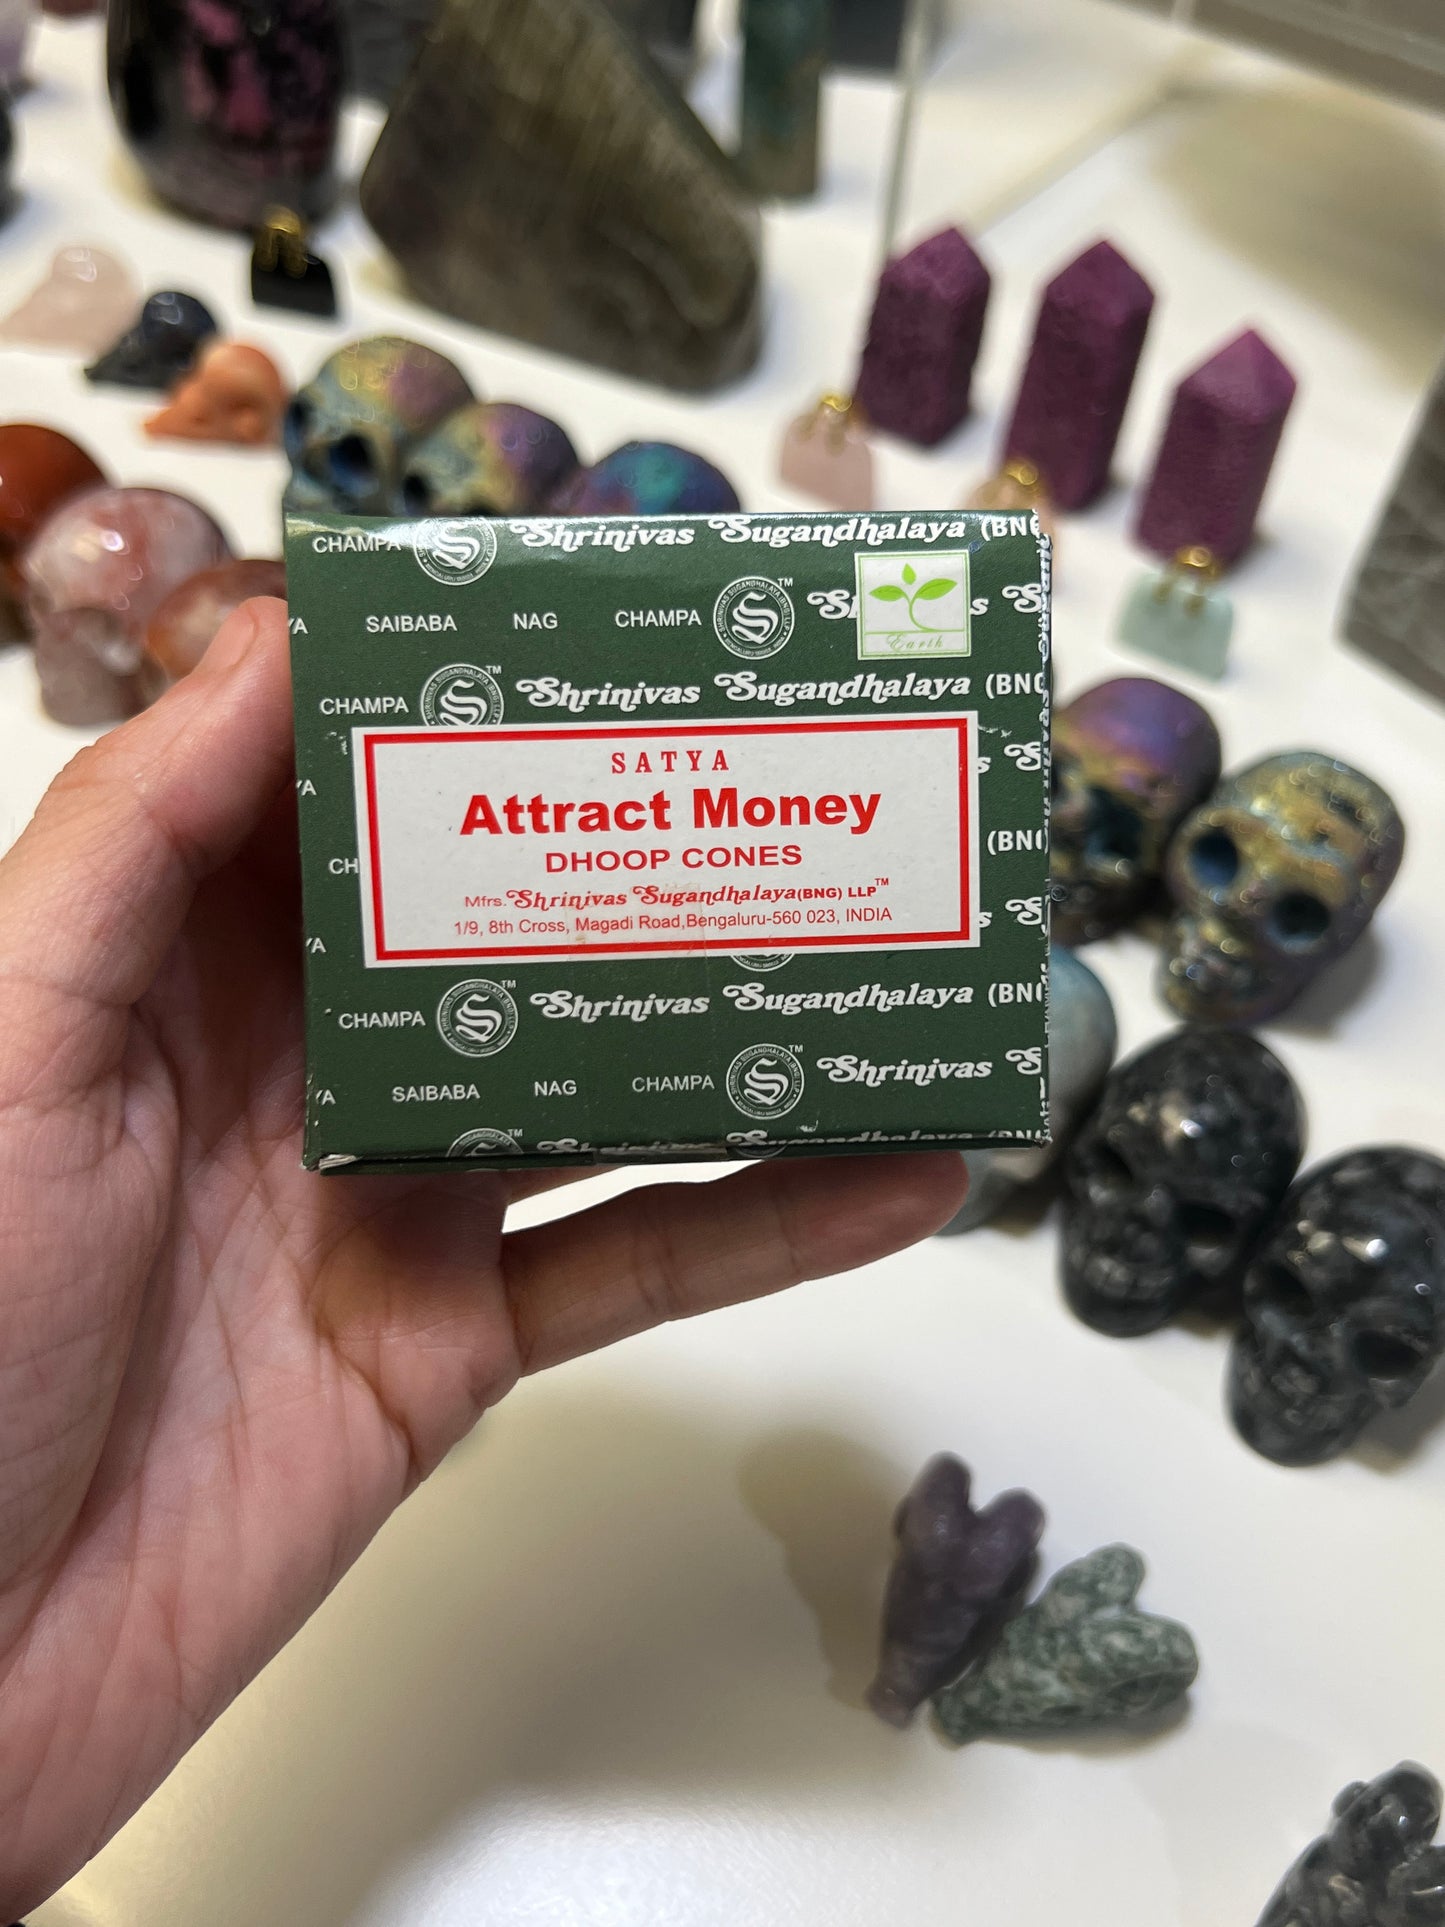 Attract Money Incense Cones